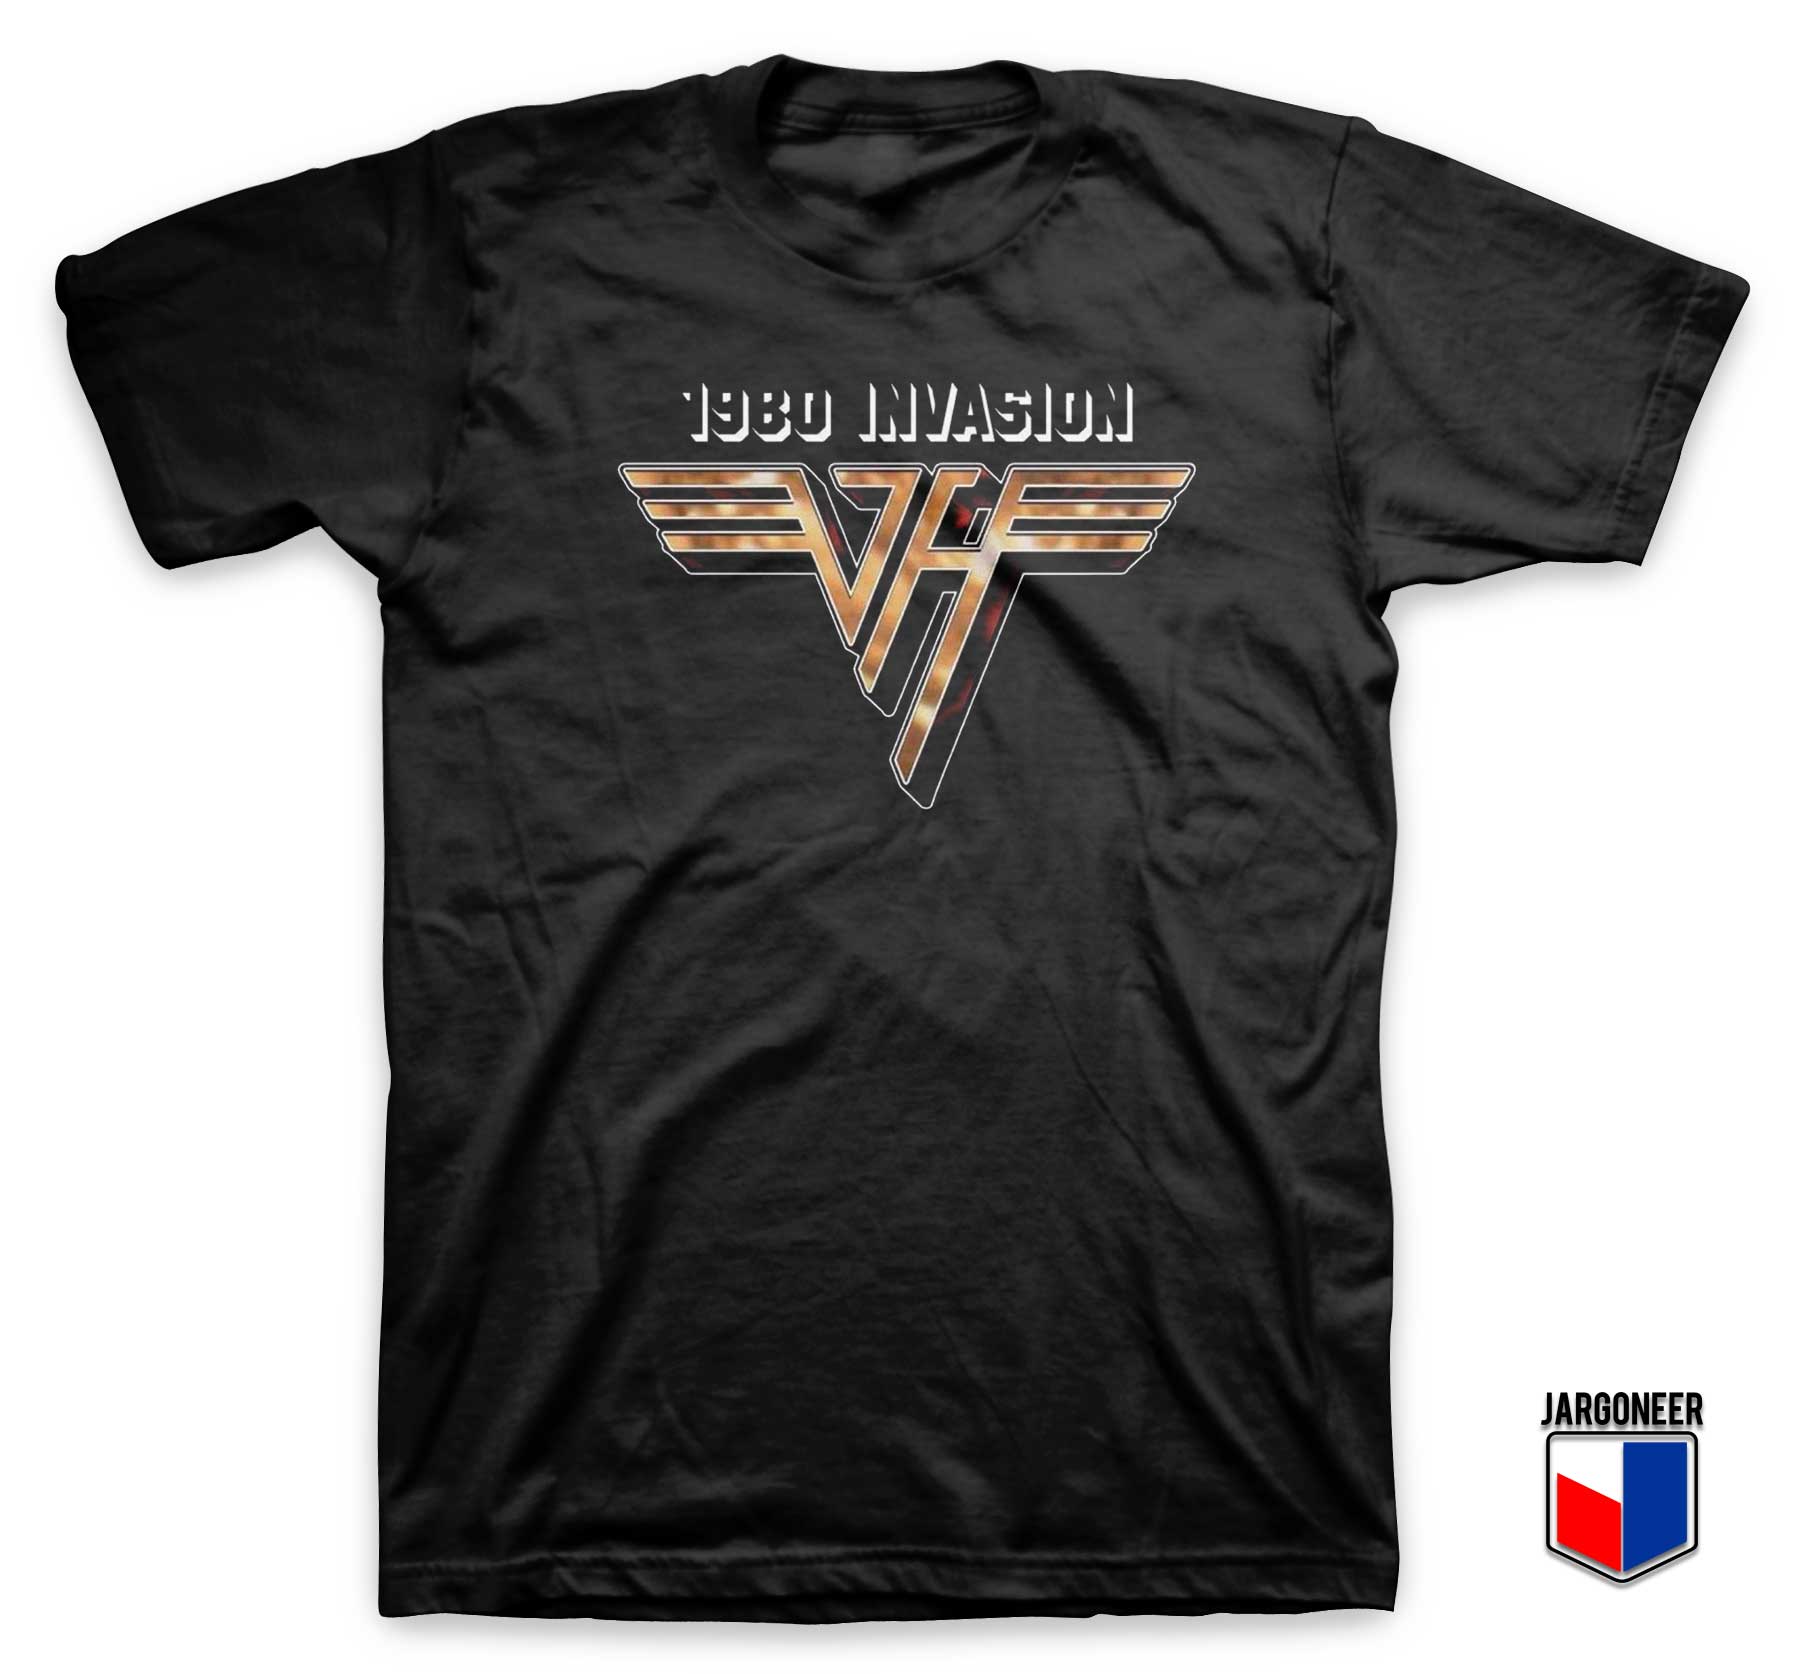 Van Halen 1980 Invasion T Shirt - Shop Unique Graphic Cool Shirt Designs